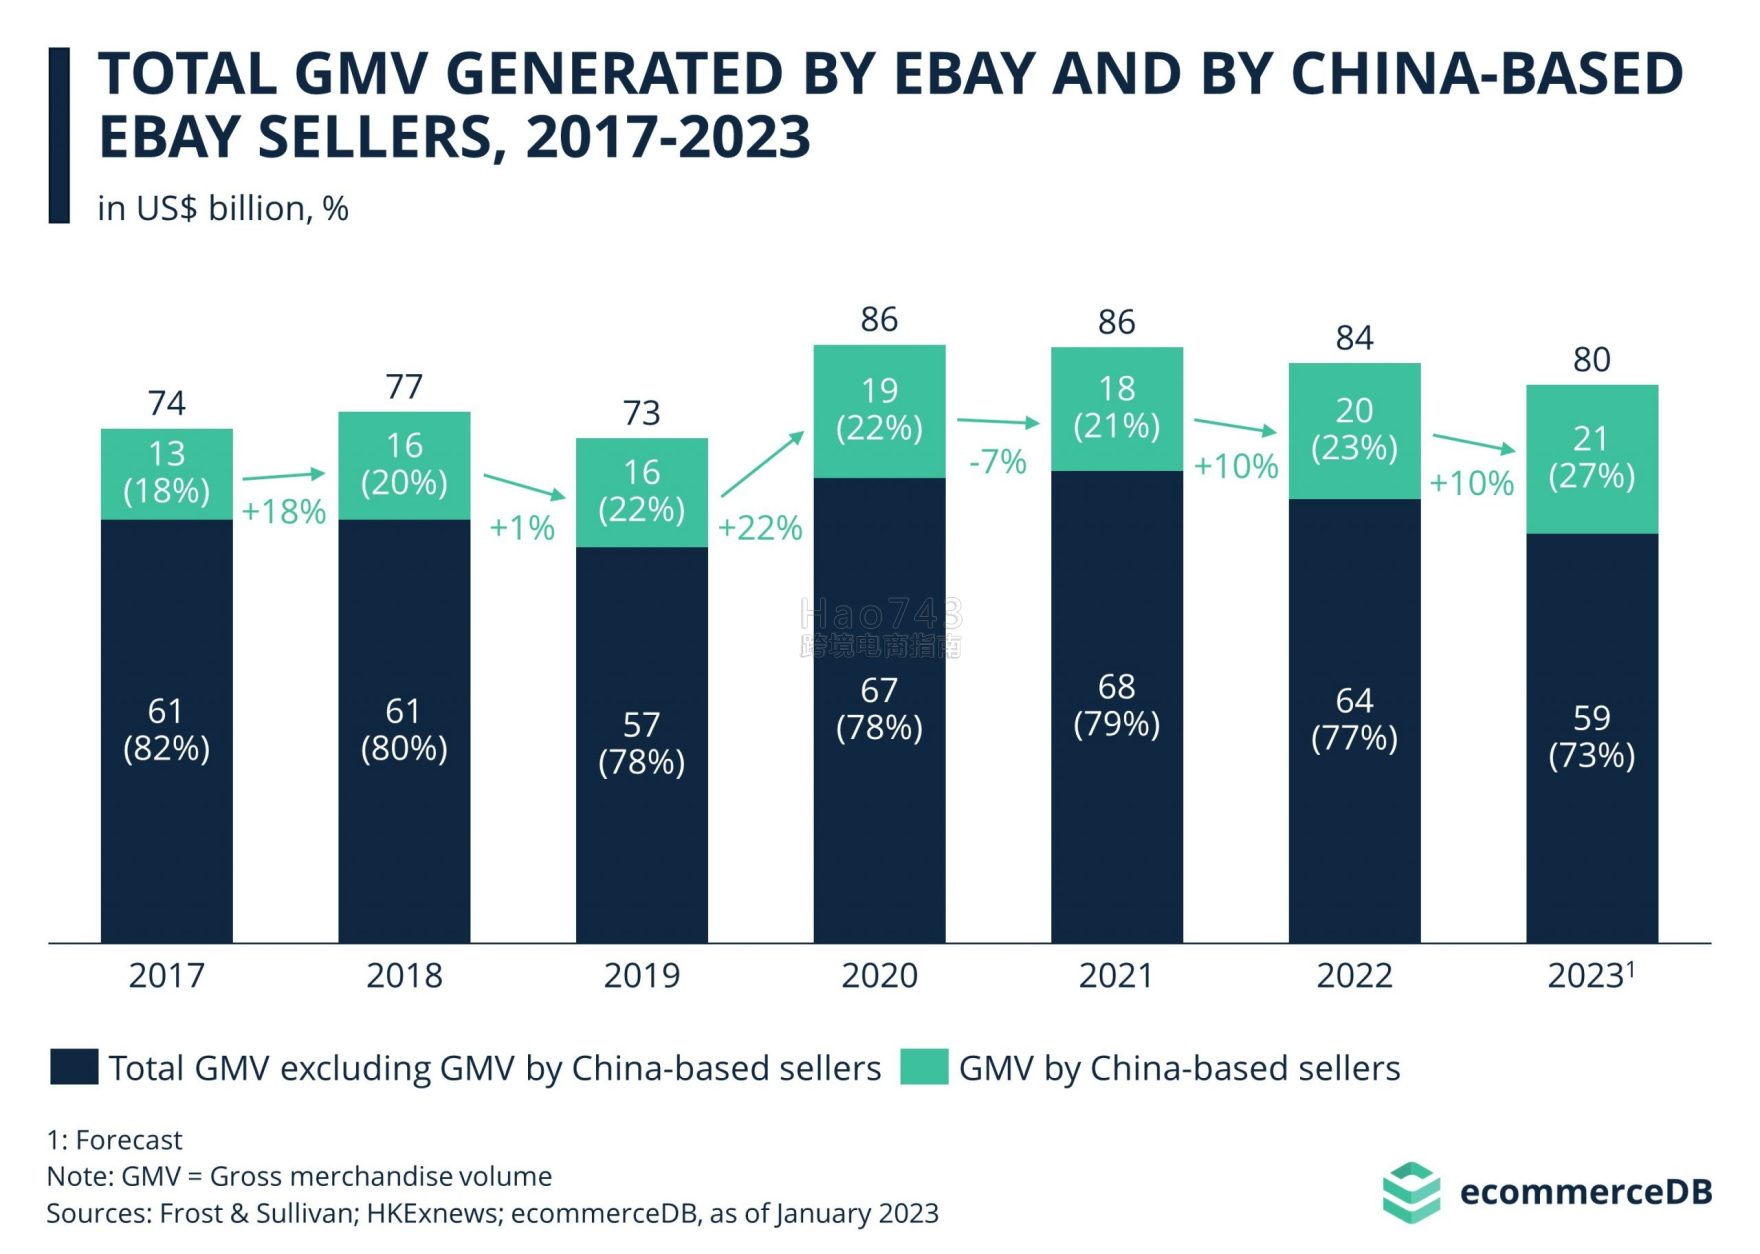 Ecommercedb分享了中国卖家在全球电商平台份额占比报告 预计在2023年占amazon总gmv 28%